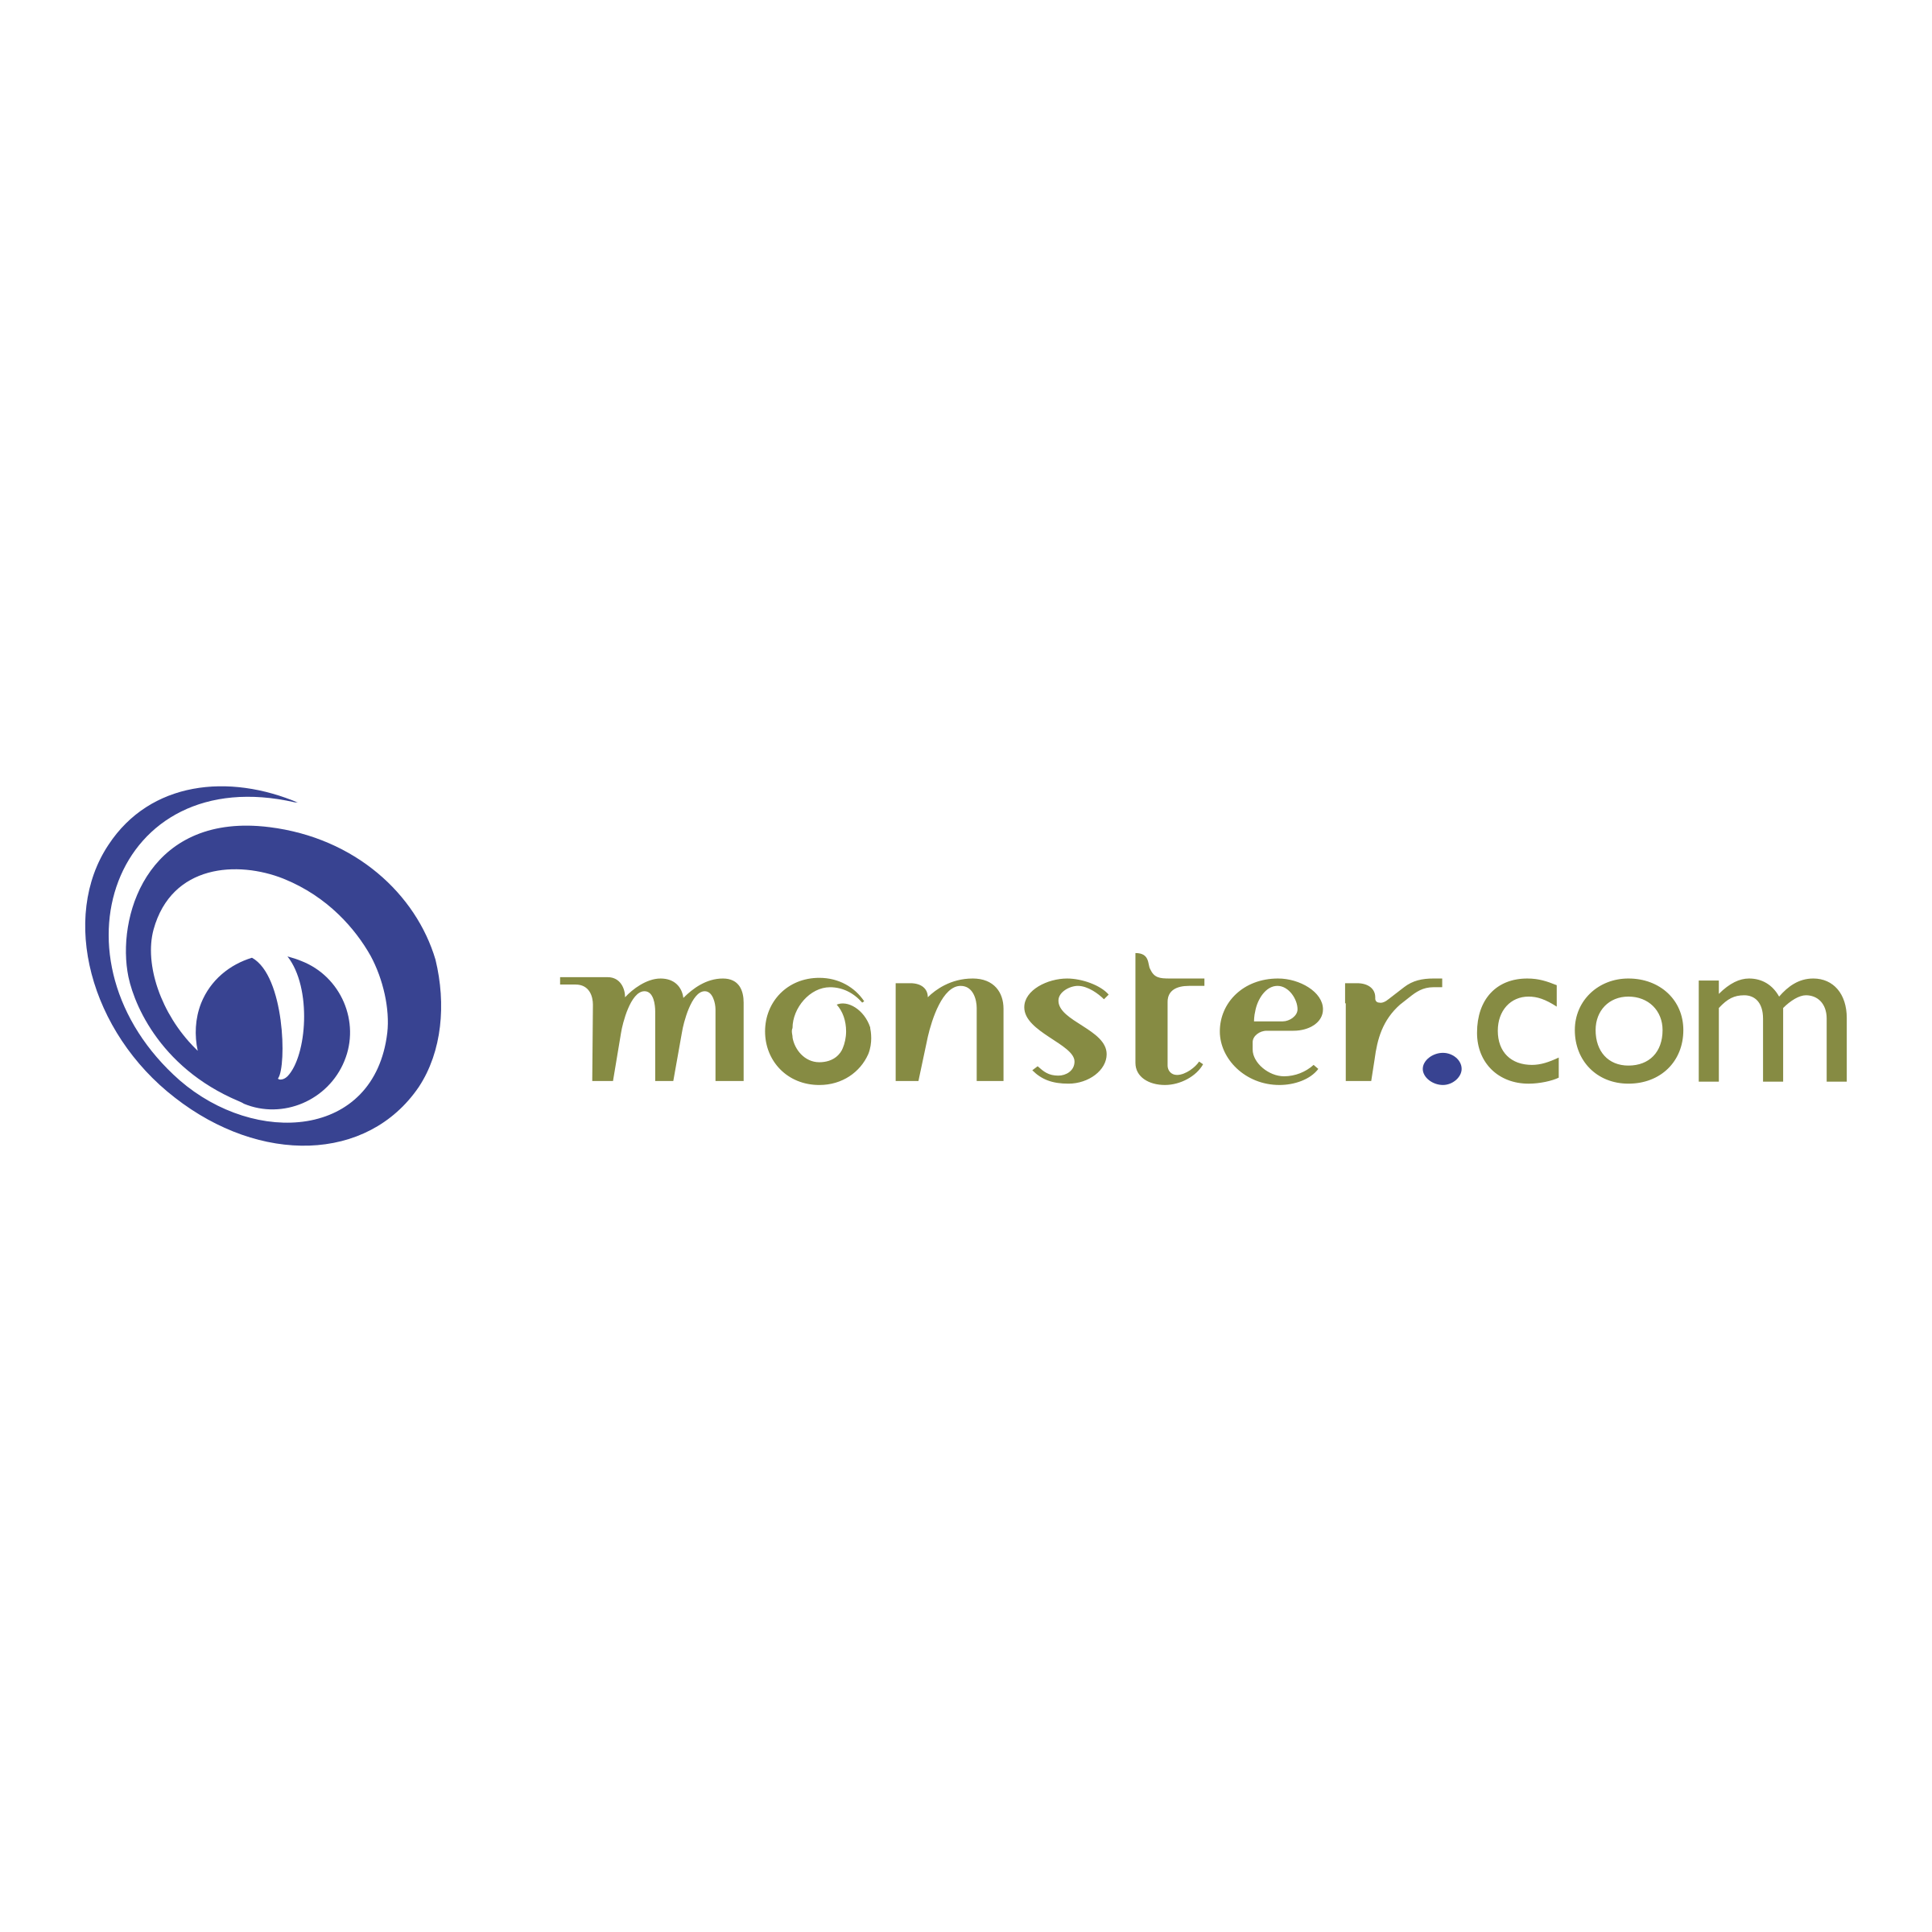 Monster.com Logo - Monster com Logo PNG Transparent & SVG Vector